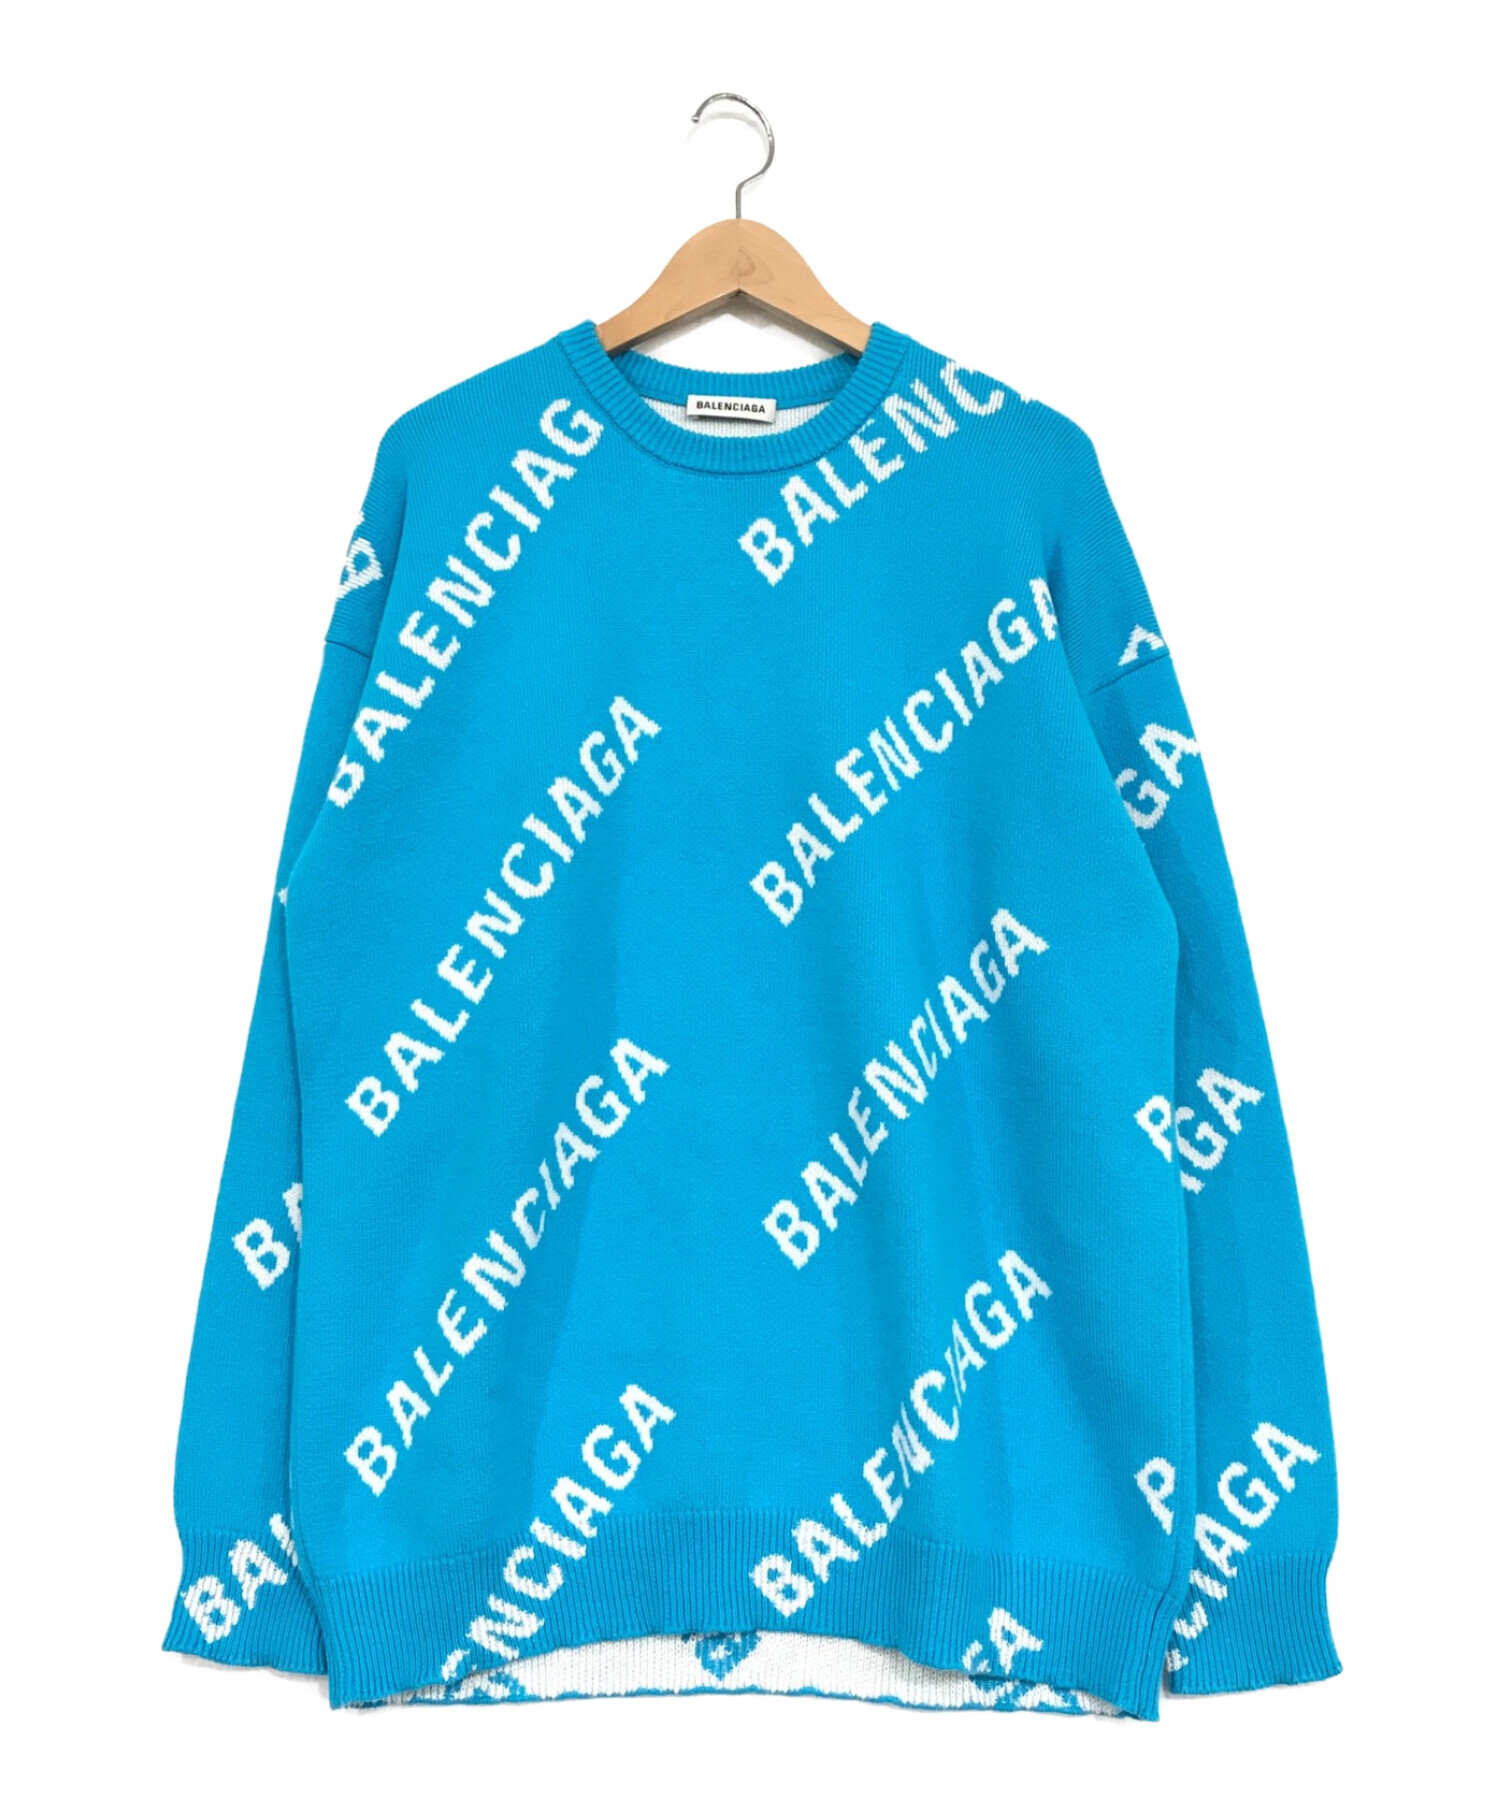 balenciaga ブルー オールオーバー ロゴ セーター 新品-